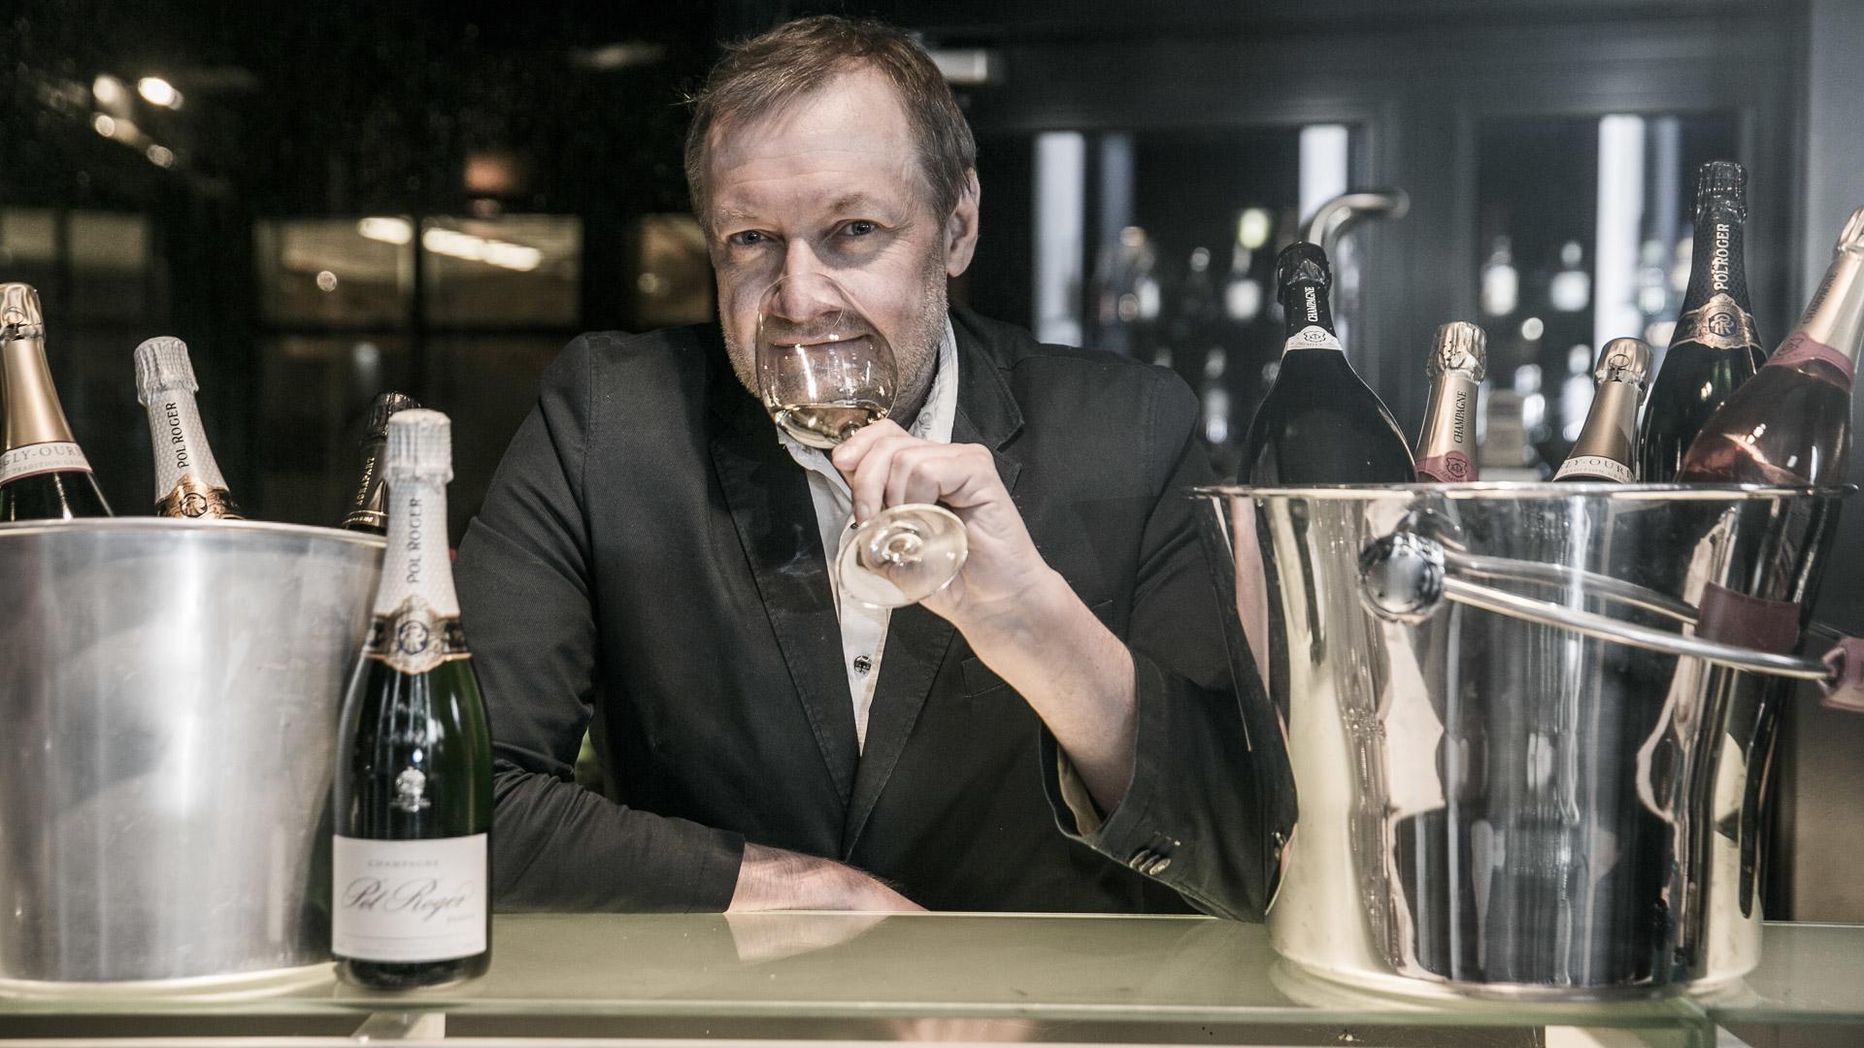 Sommeljee Igor Sööt ise panustab maitsekirjul pühadelaual väärikale aastakäigu śampanjale, mille värskus, happesus ja täidlus mängivad sellega hästi kokku.